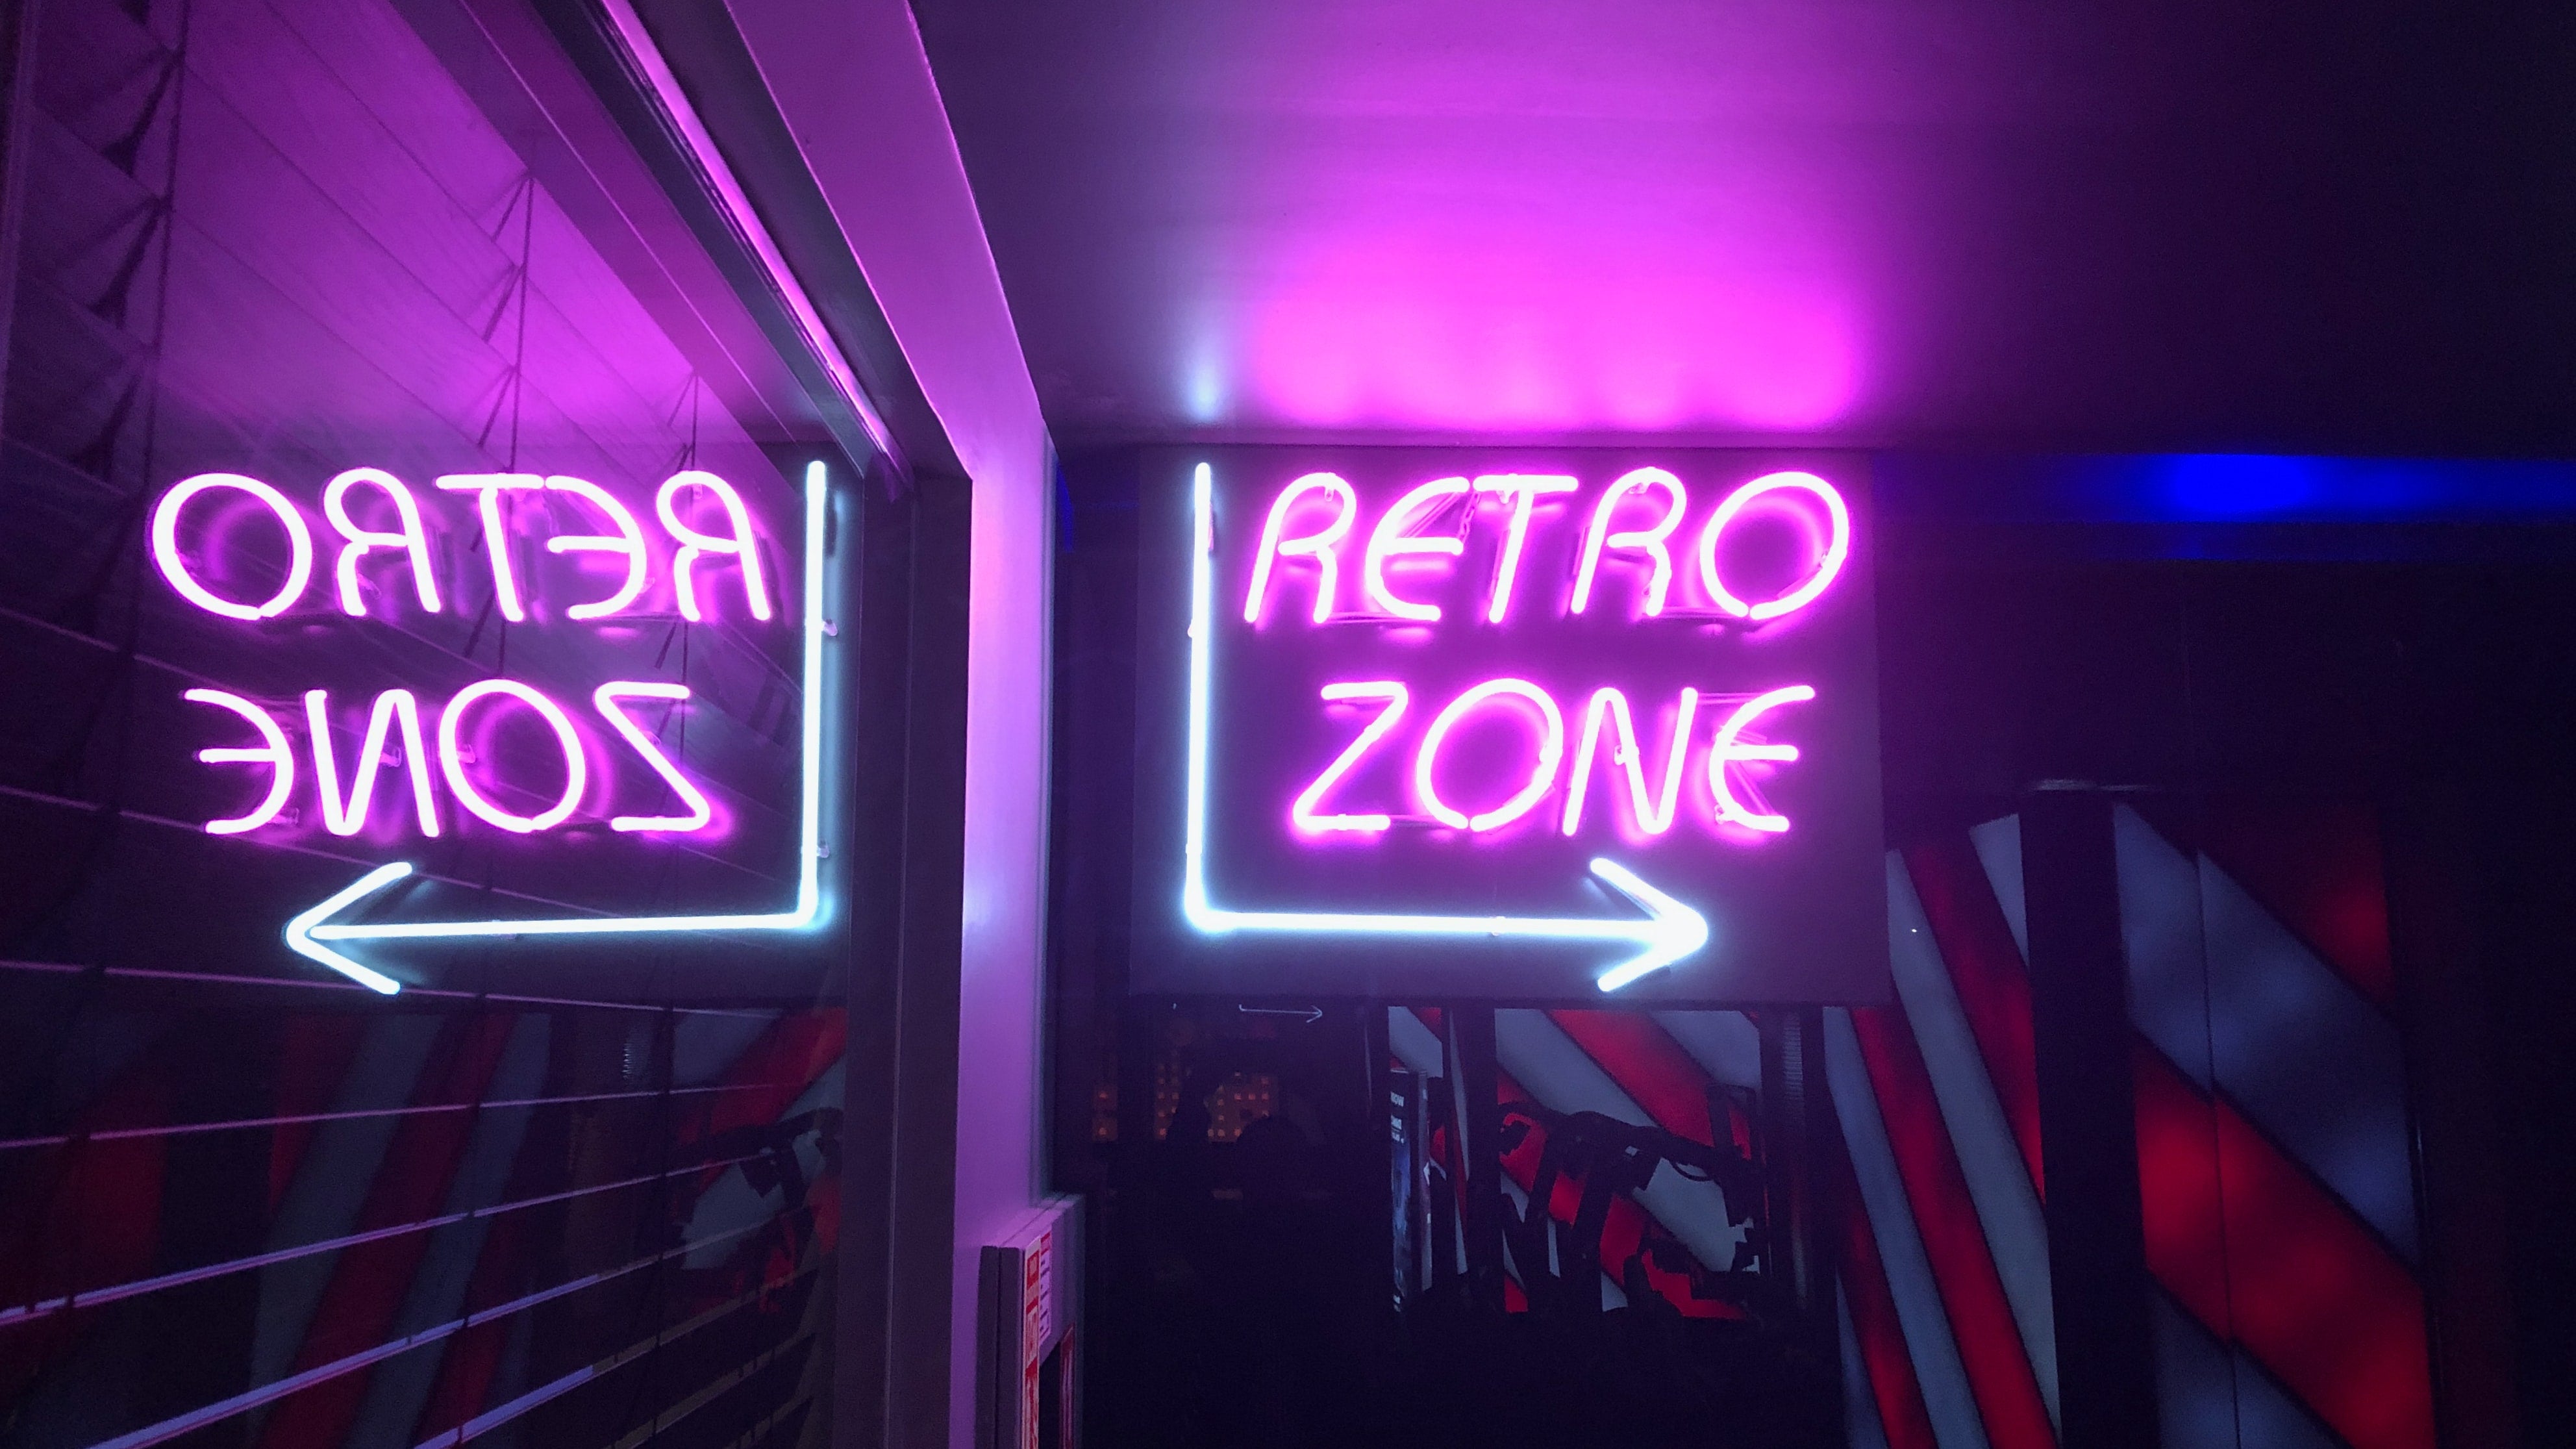 Bonzo's Retro Shop